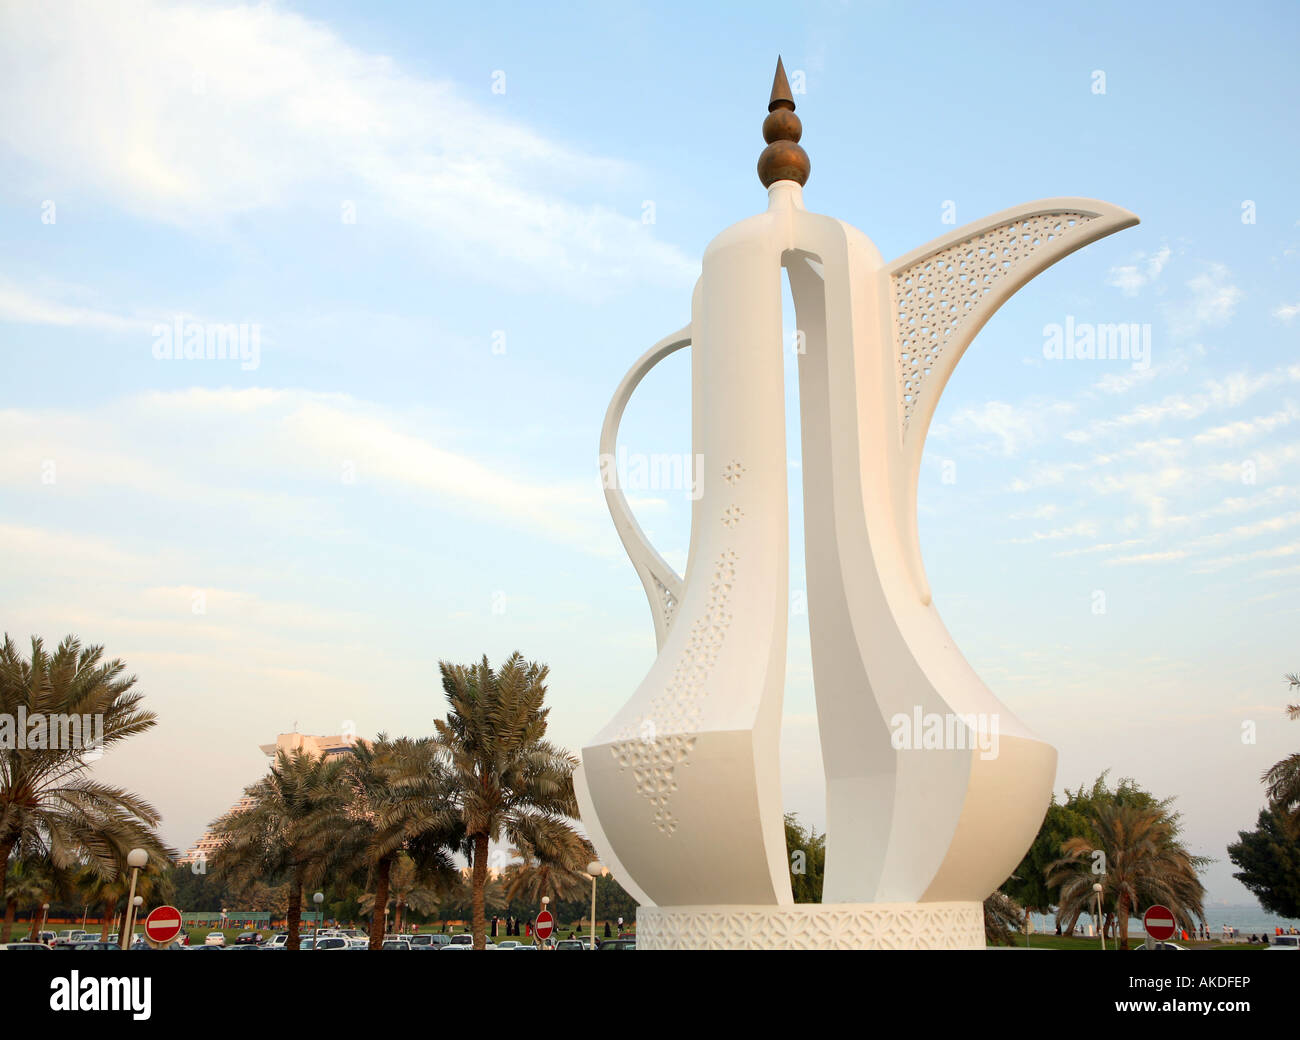 The Dallah coffee pot monument on the Corniche in Doha Qatar Stock Photo